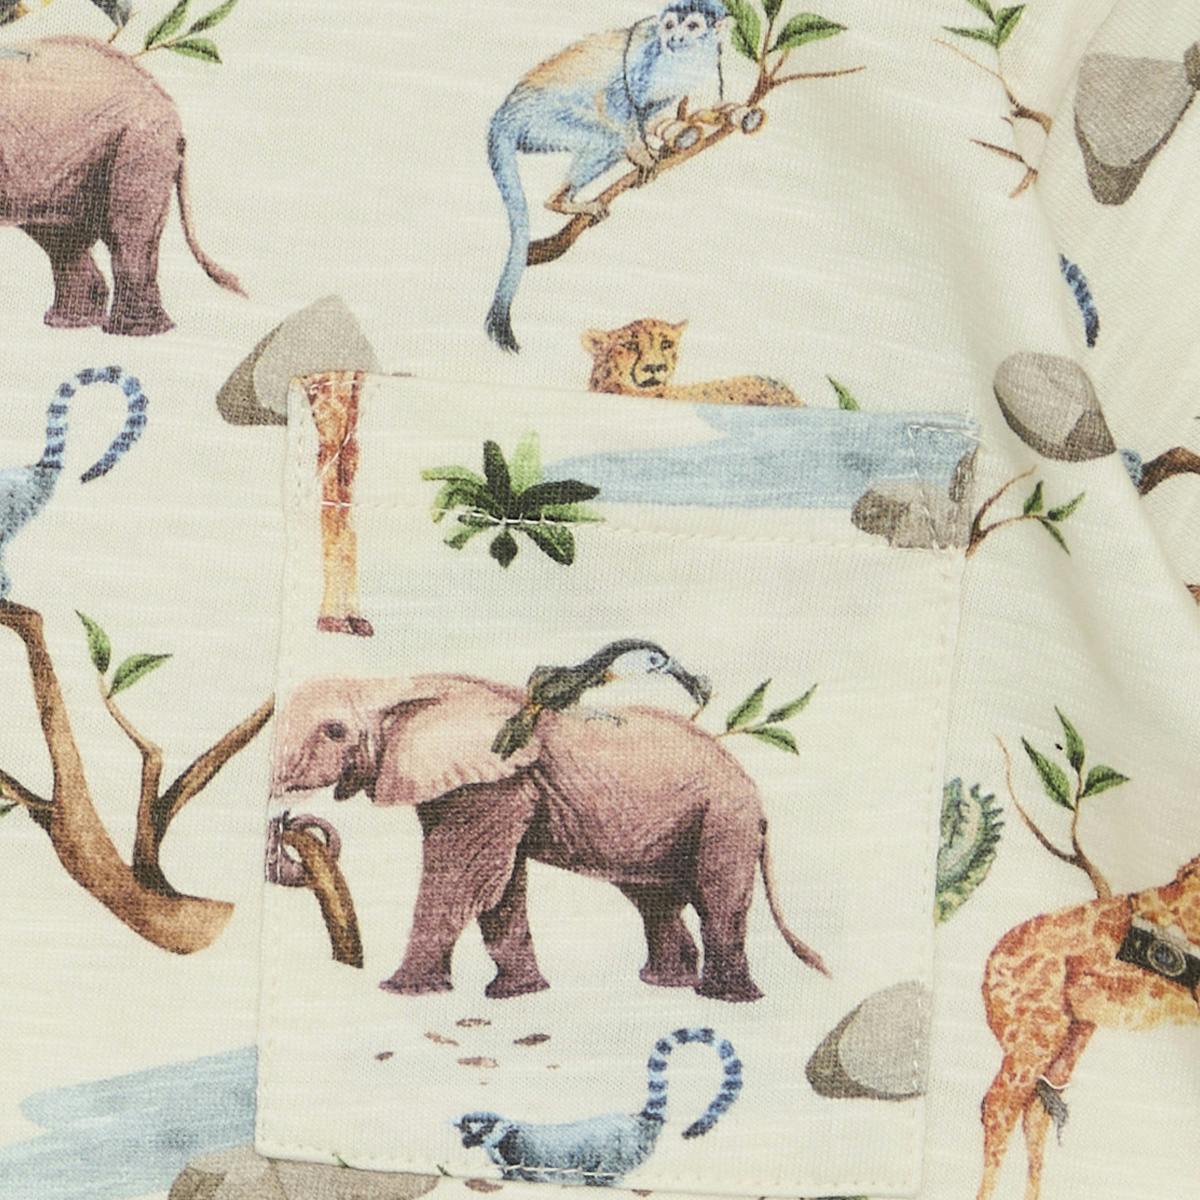 t-shirt med krokodiler, elefanter, giraffer m.m.